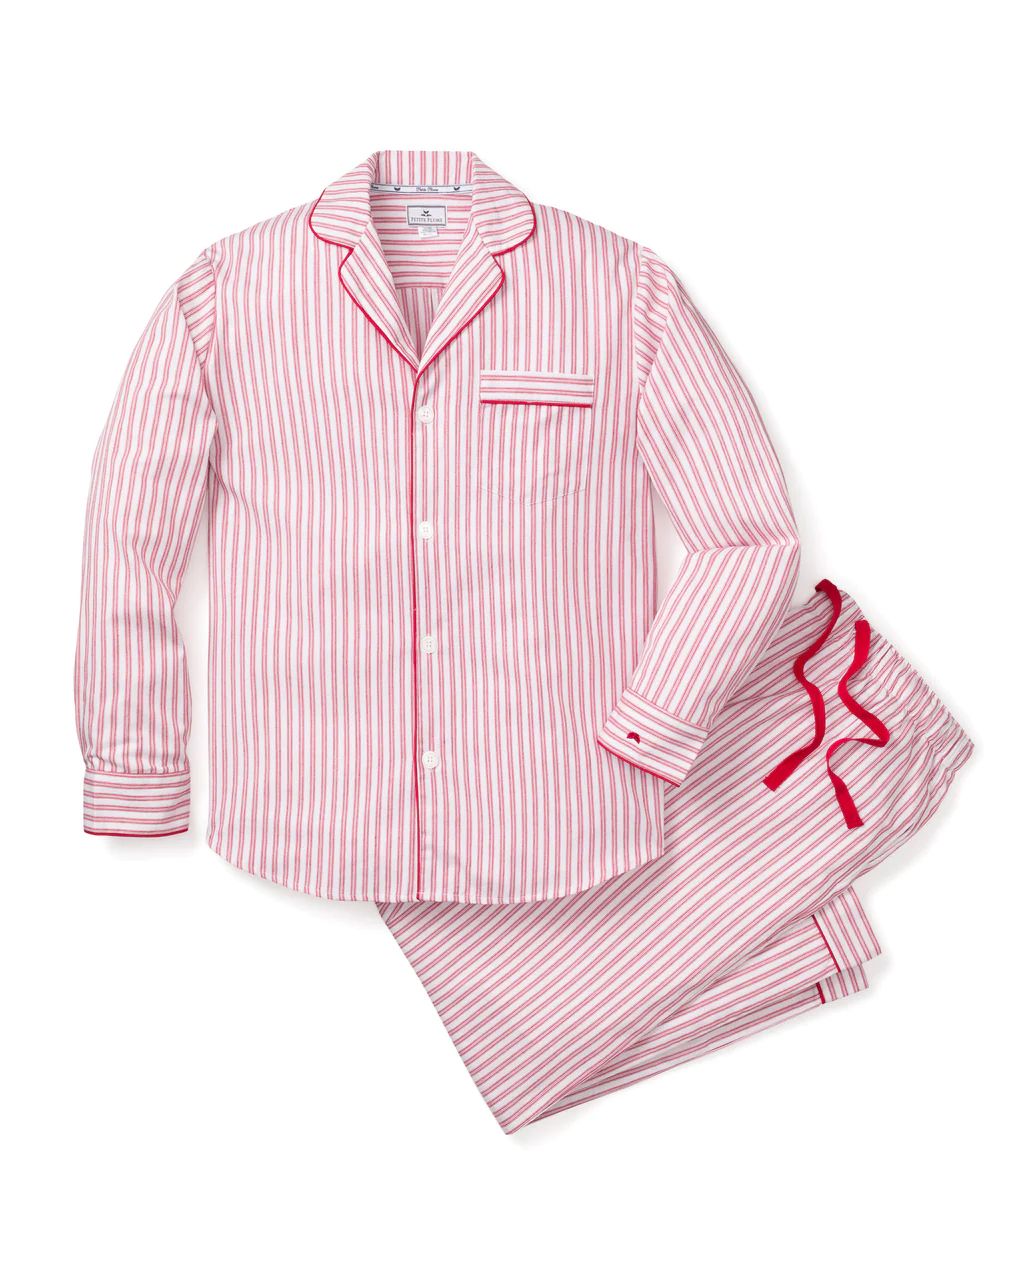 Men's Antique Red Ticking Pajama Set | Petite Plume